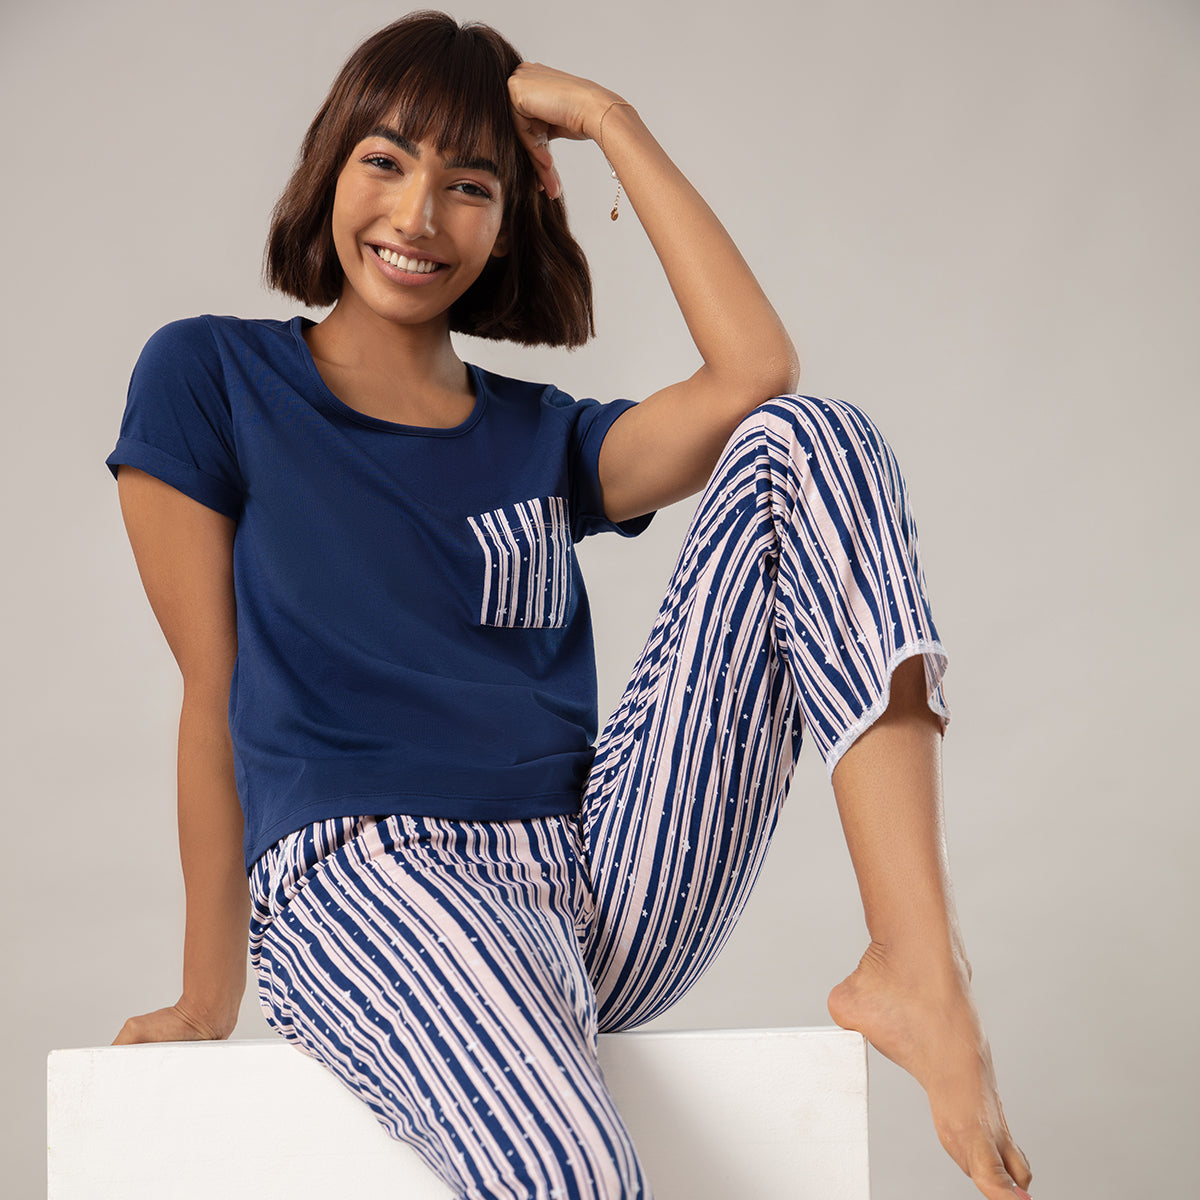 Super Fine Cotton Cosy Pajama Set - NYS108 Stripe Heart